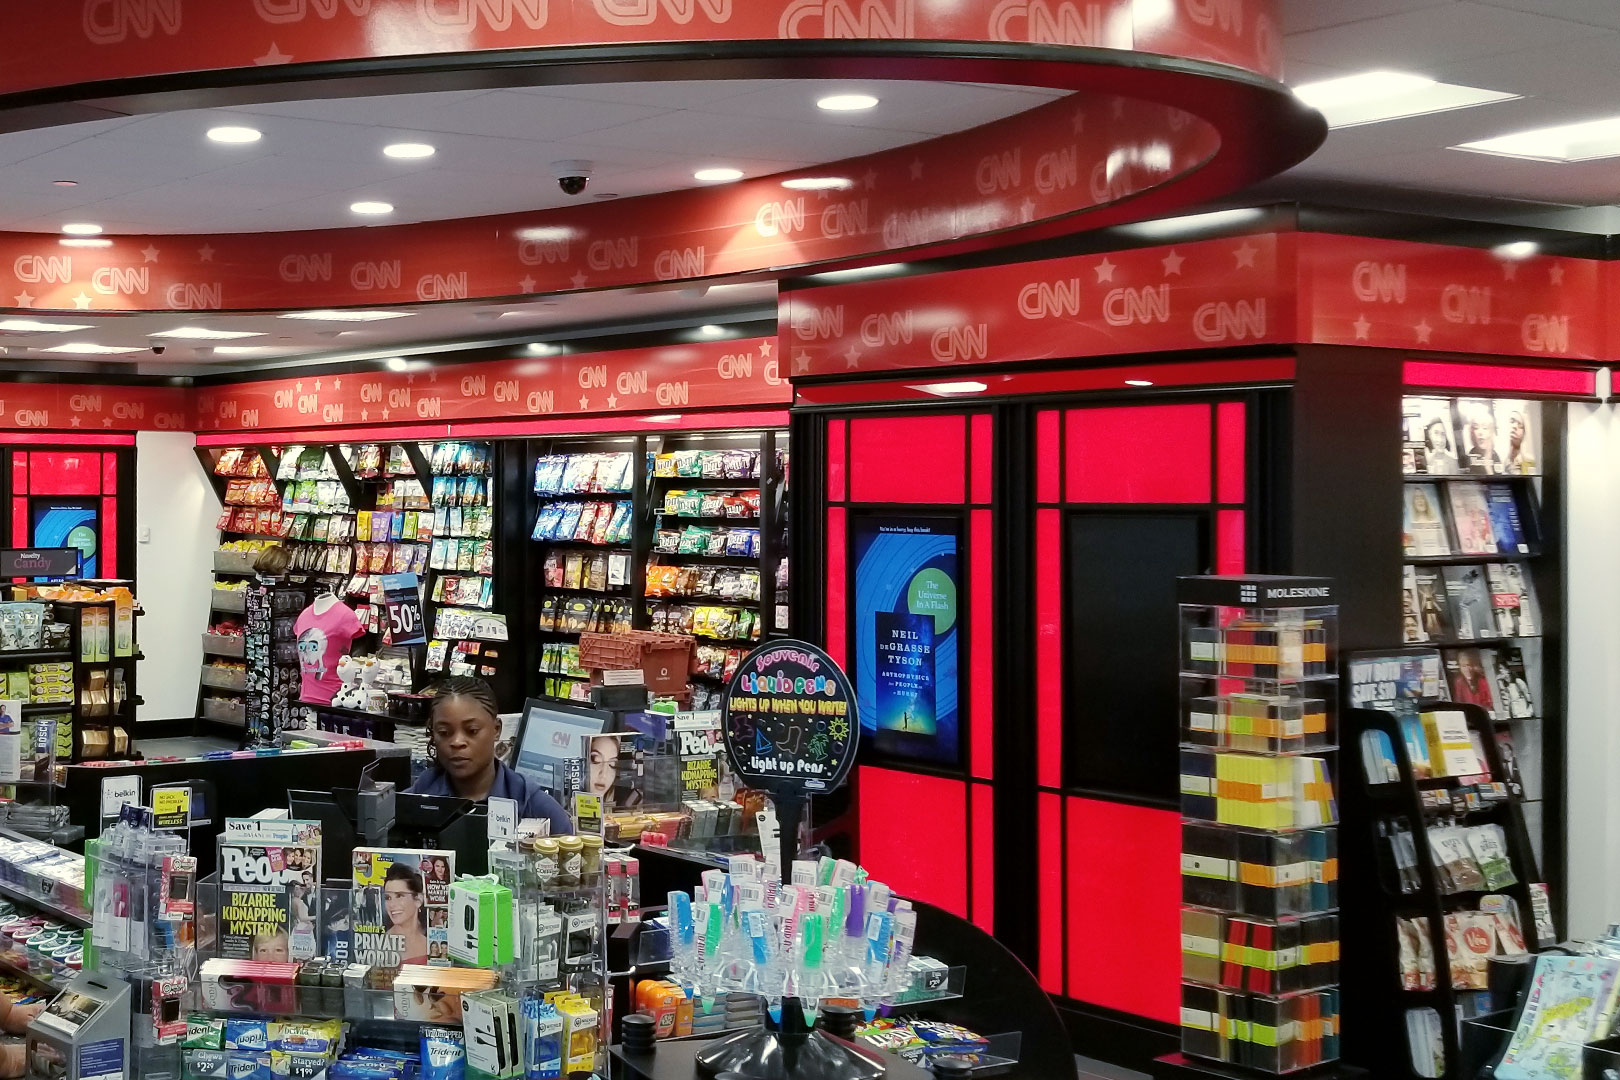 CNN Newsstand Retail Space